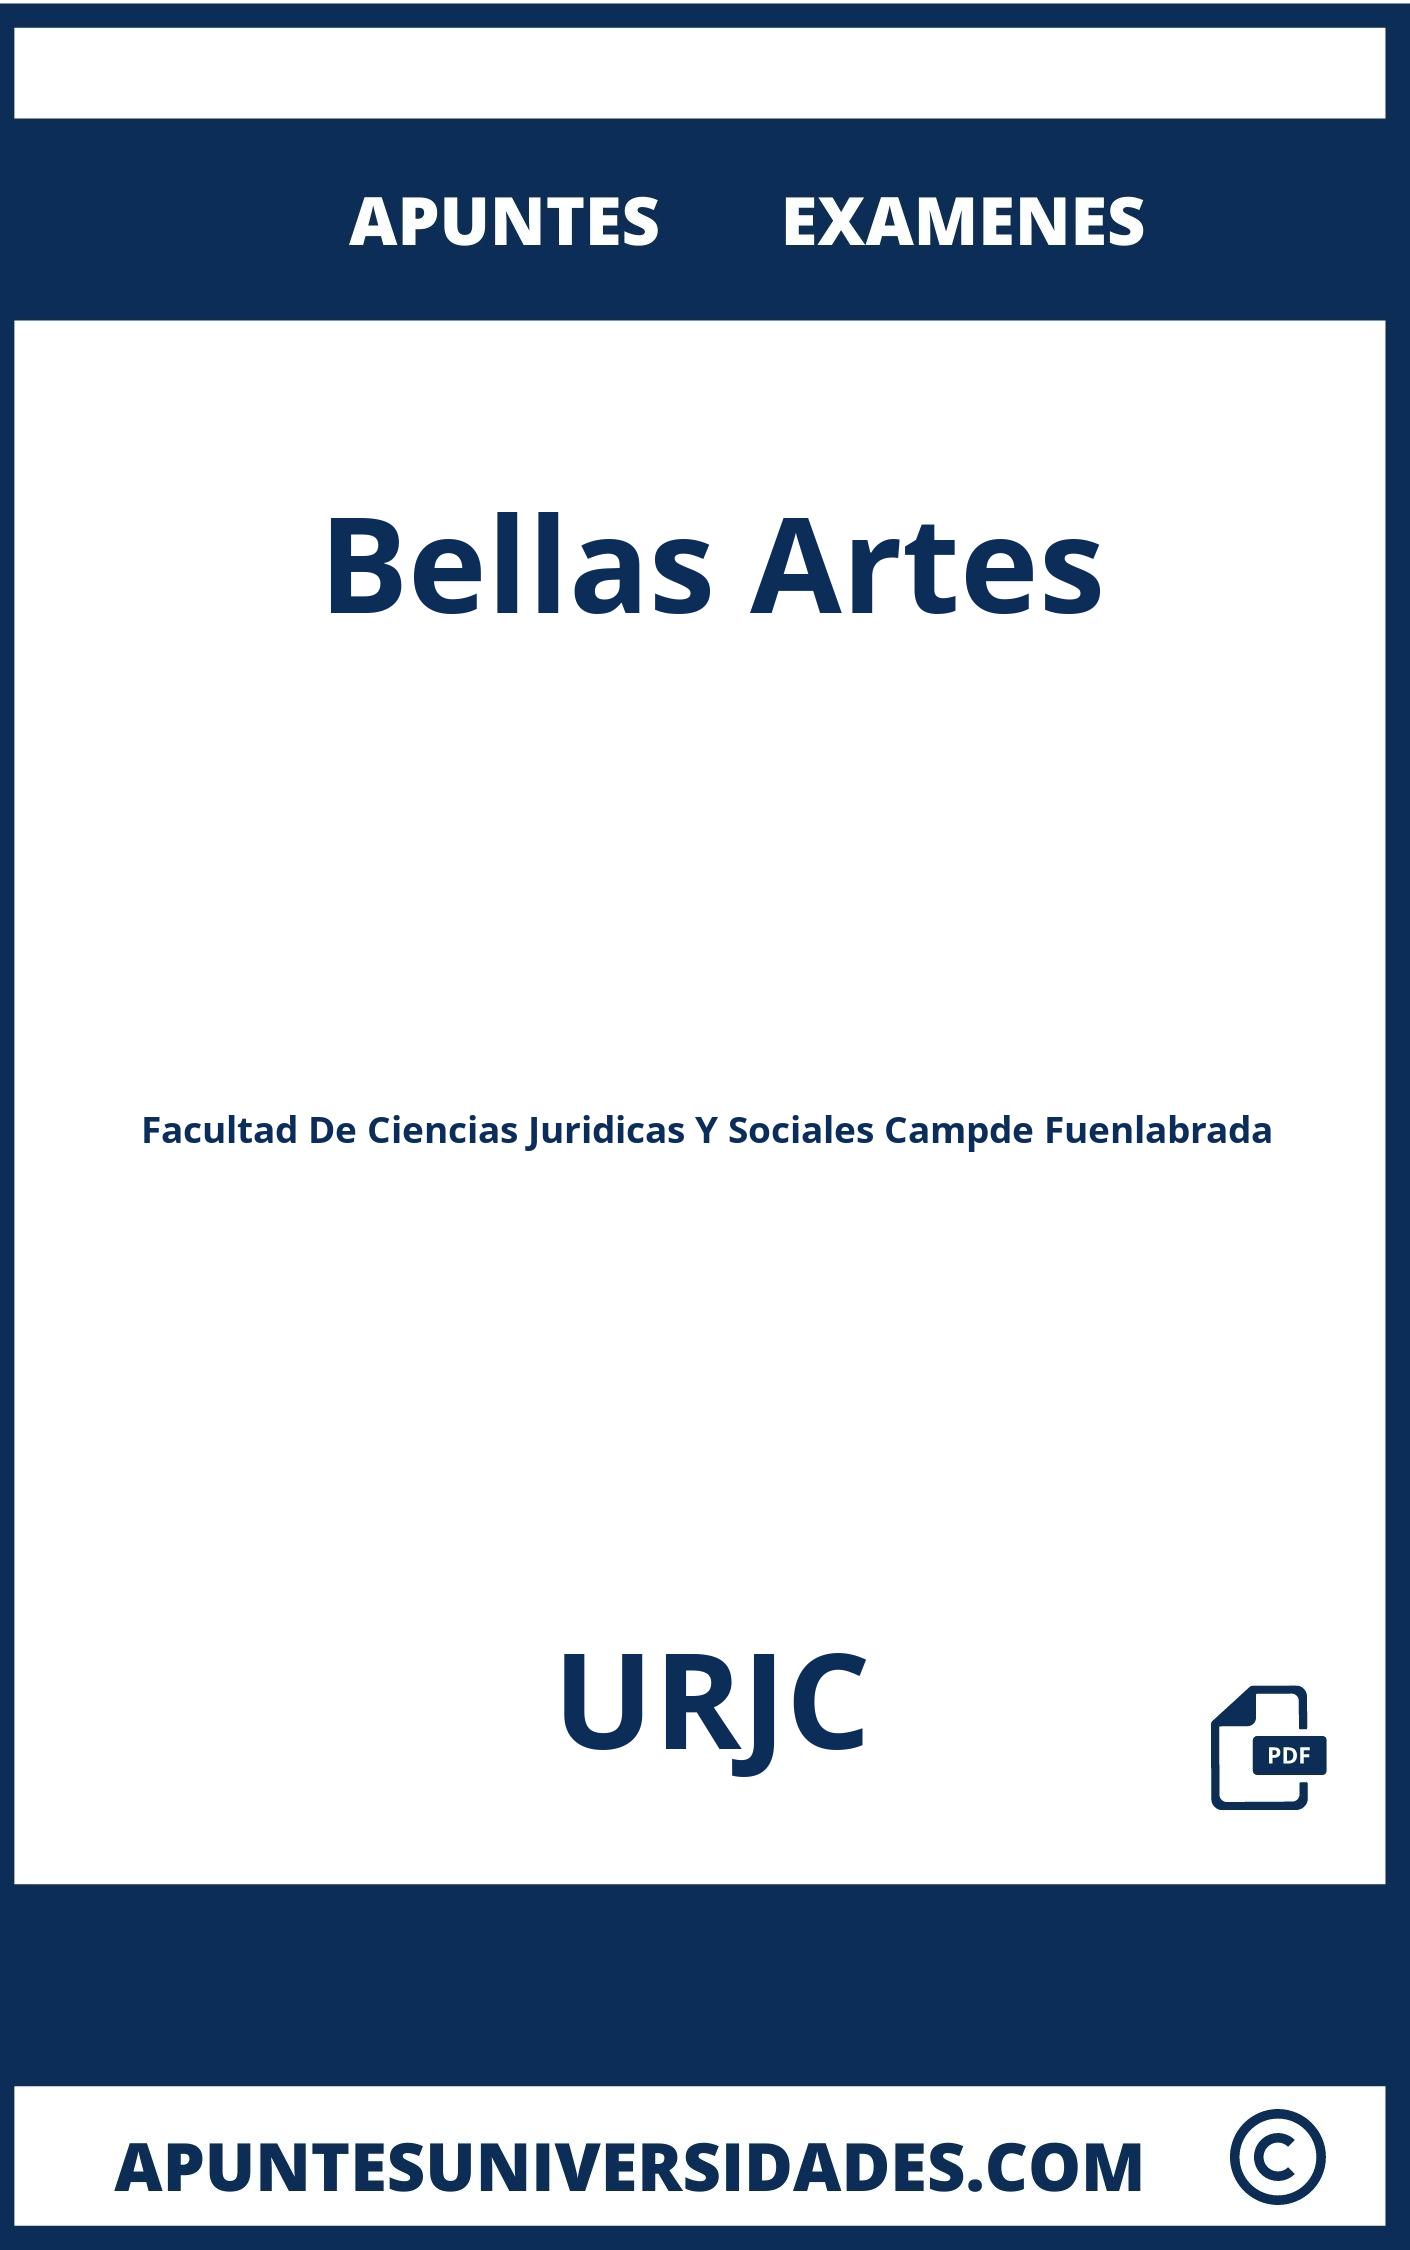 Examenes Bellas Artes URJC y Apuntes